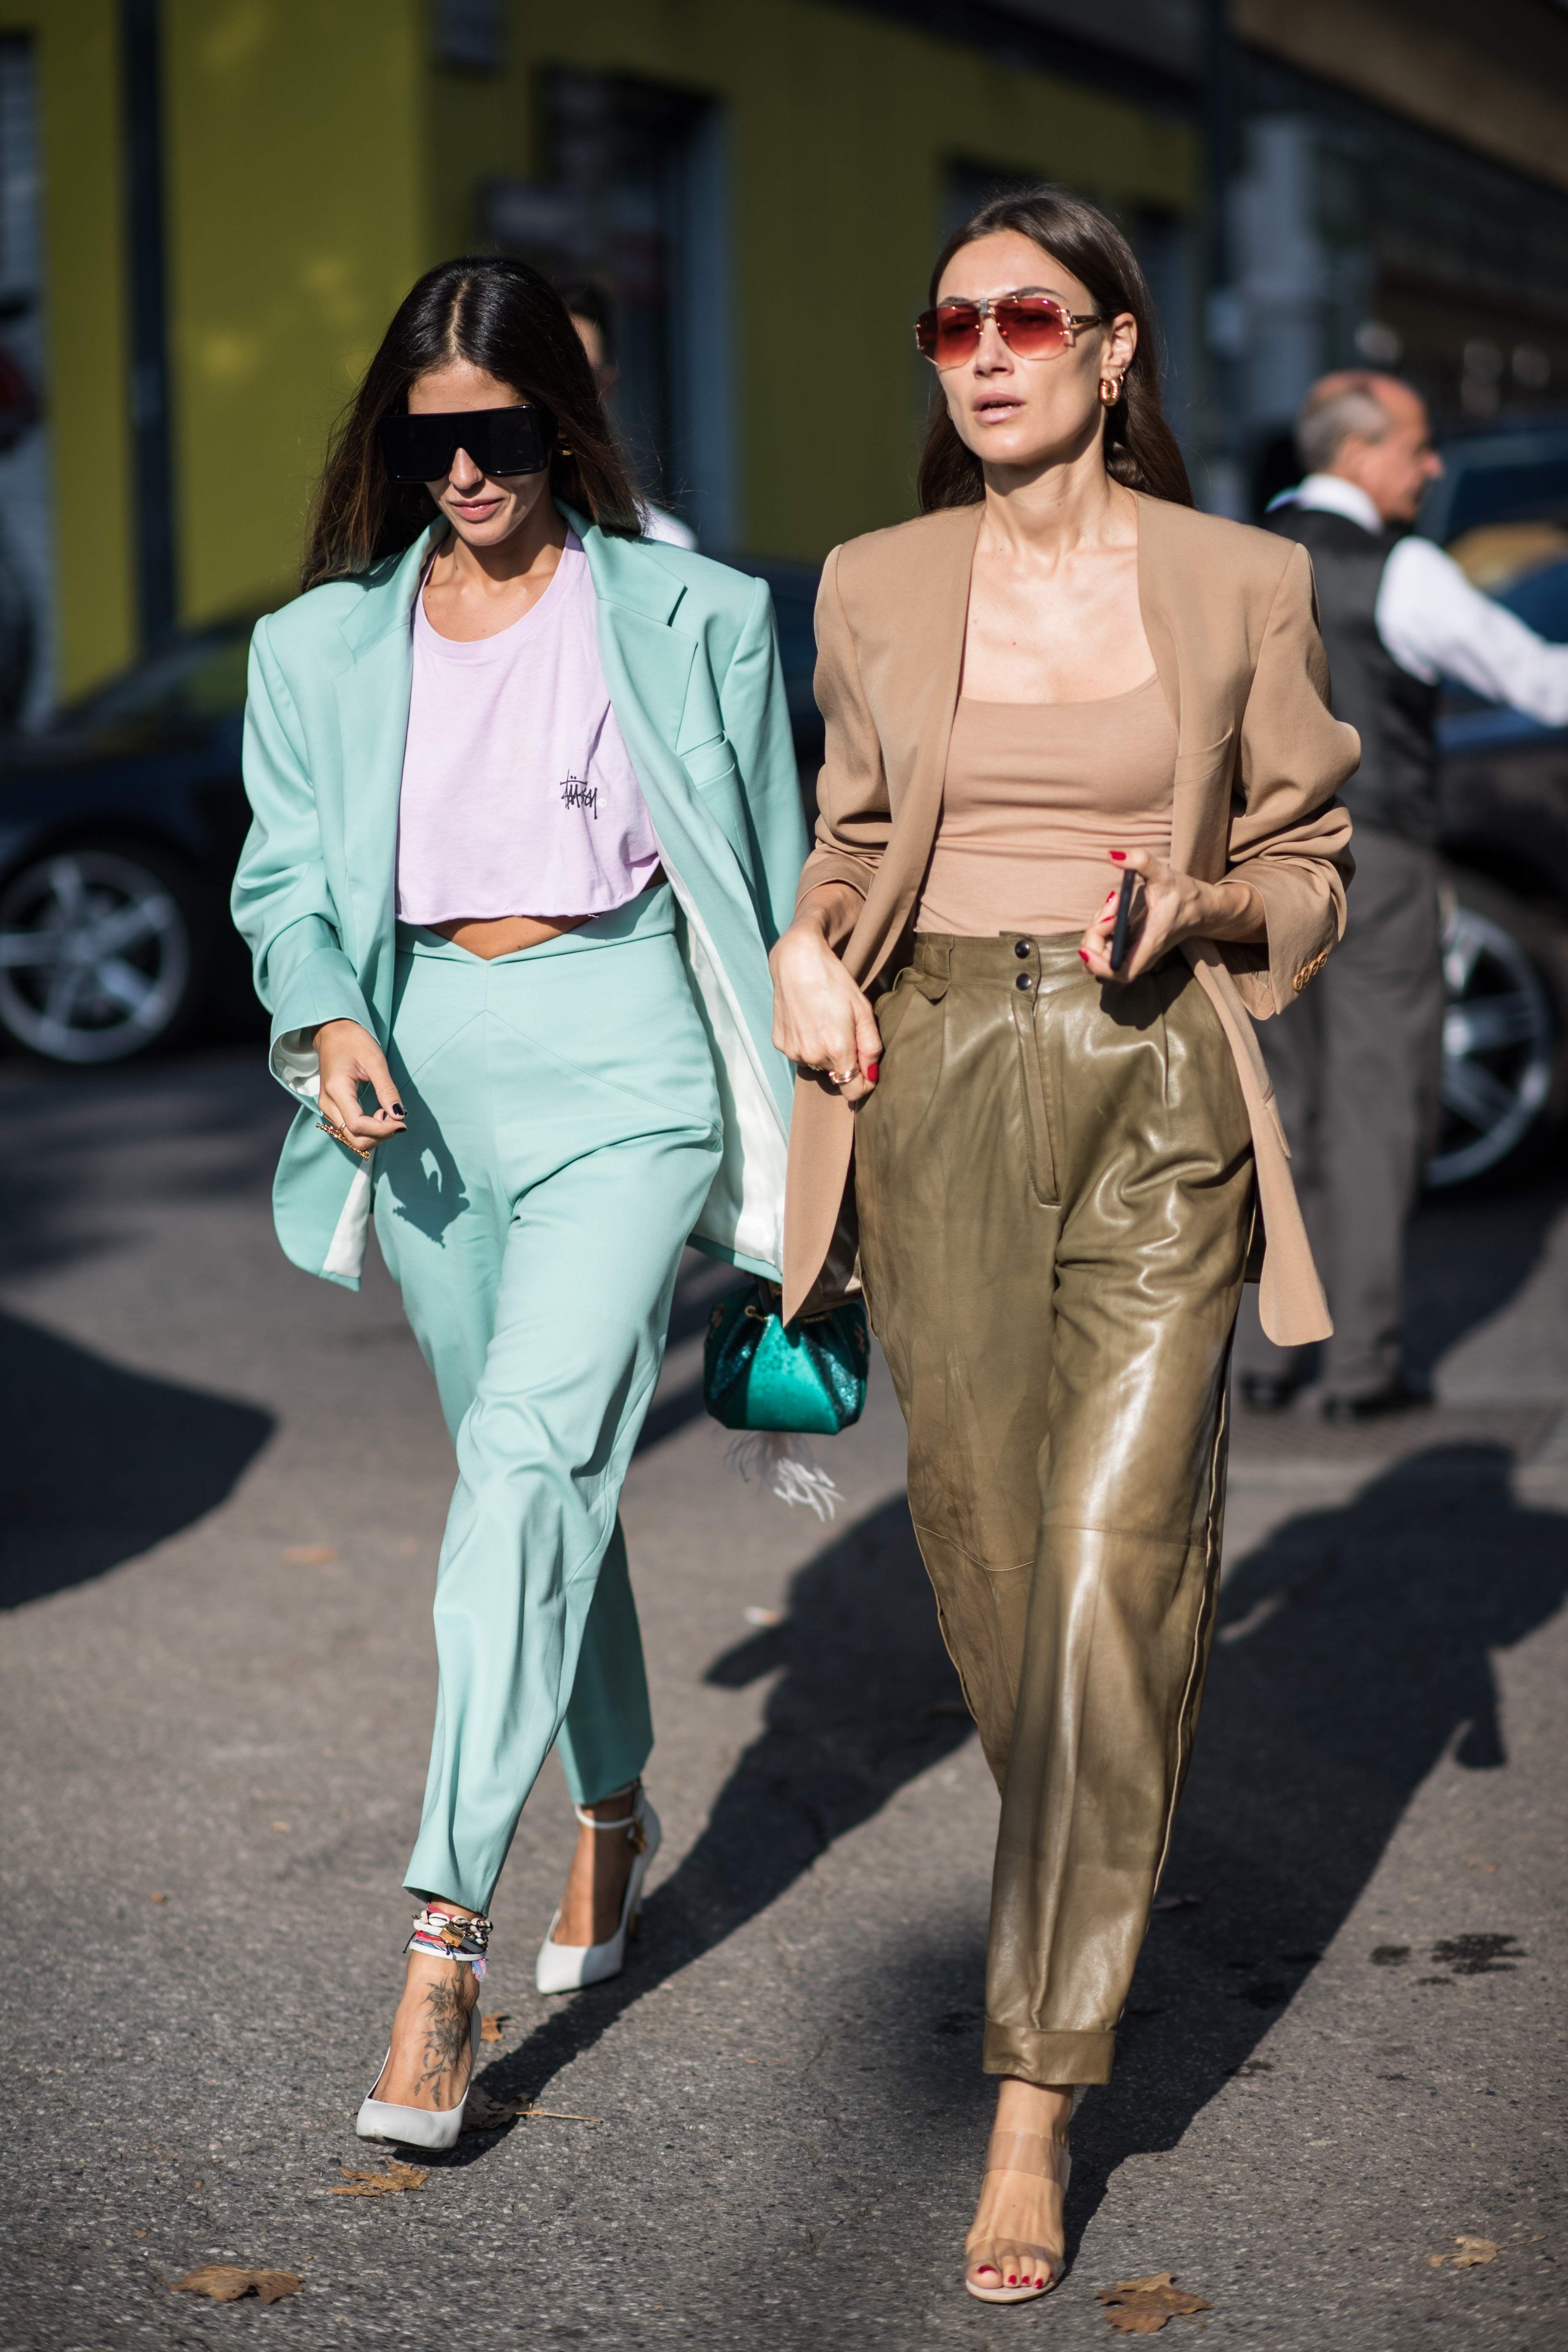 Trends Making a Comeback in 2019 | POPSUGAR Fashion